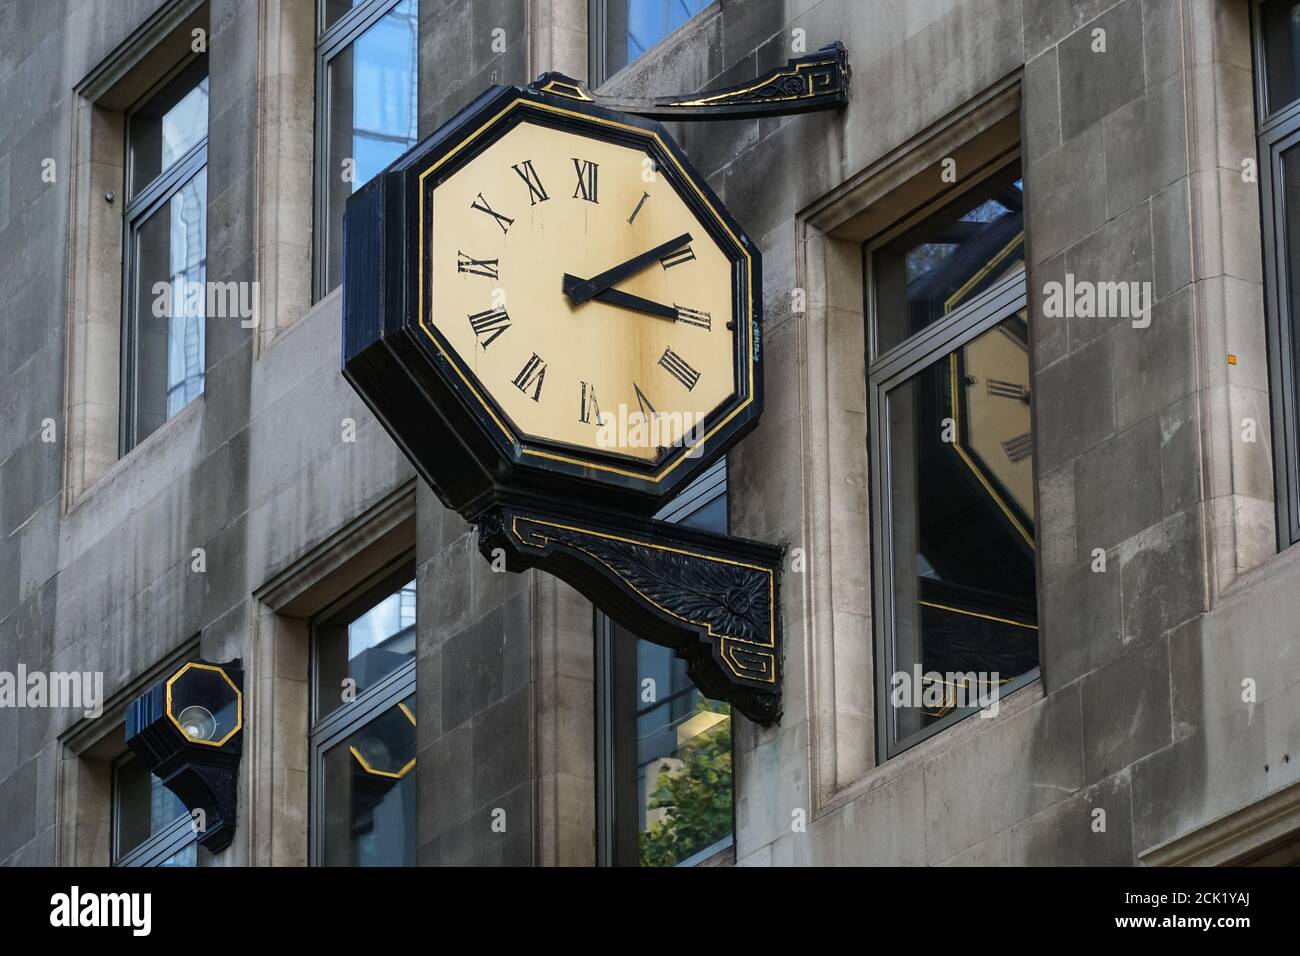 L'horloge de rue est accrochée au mur d'un bâtiment à l'intérieur Londres Angleterre Royaume-Uni Banque D'Images